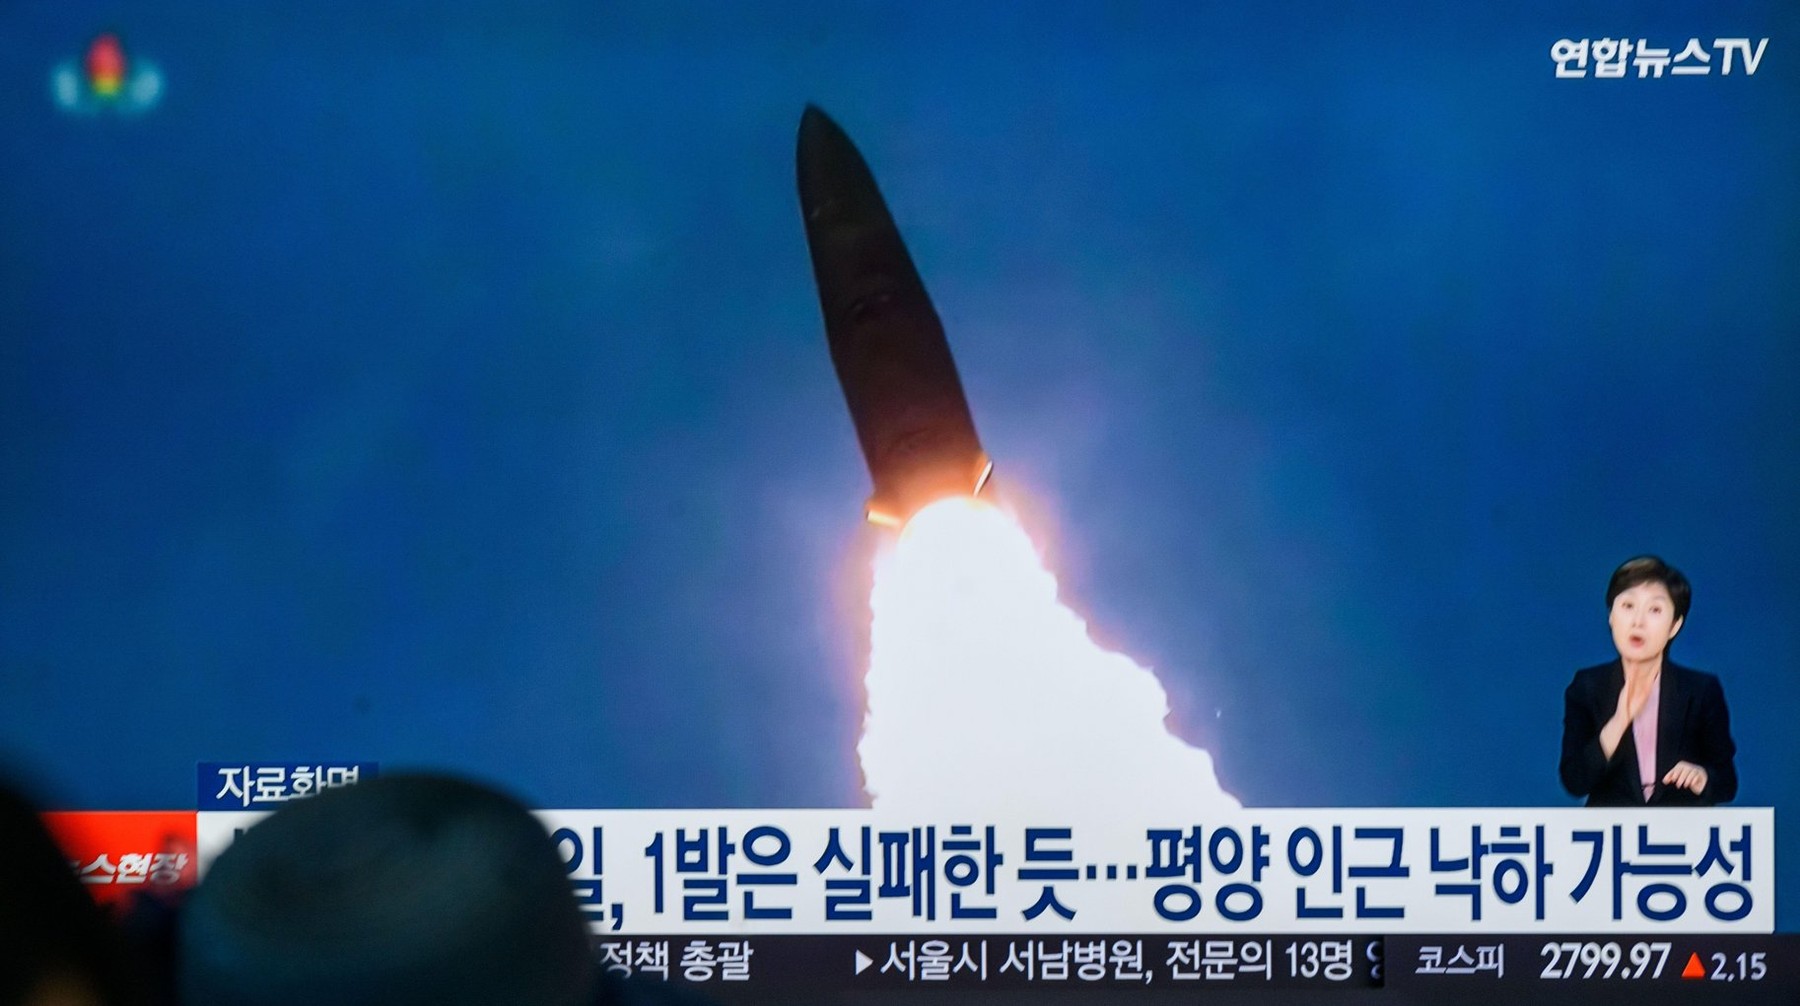 Balistička raketa Sjeverne Koreje